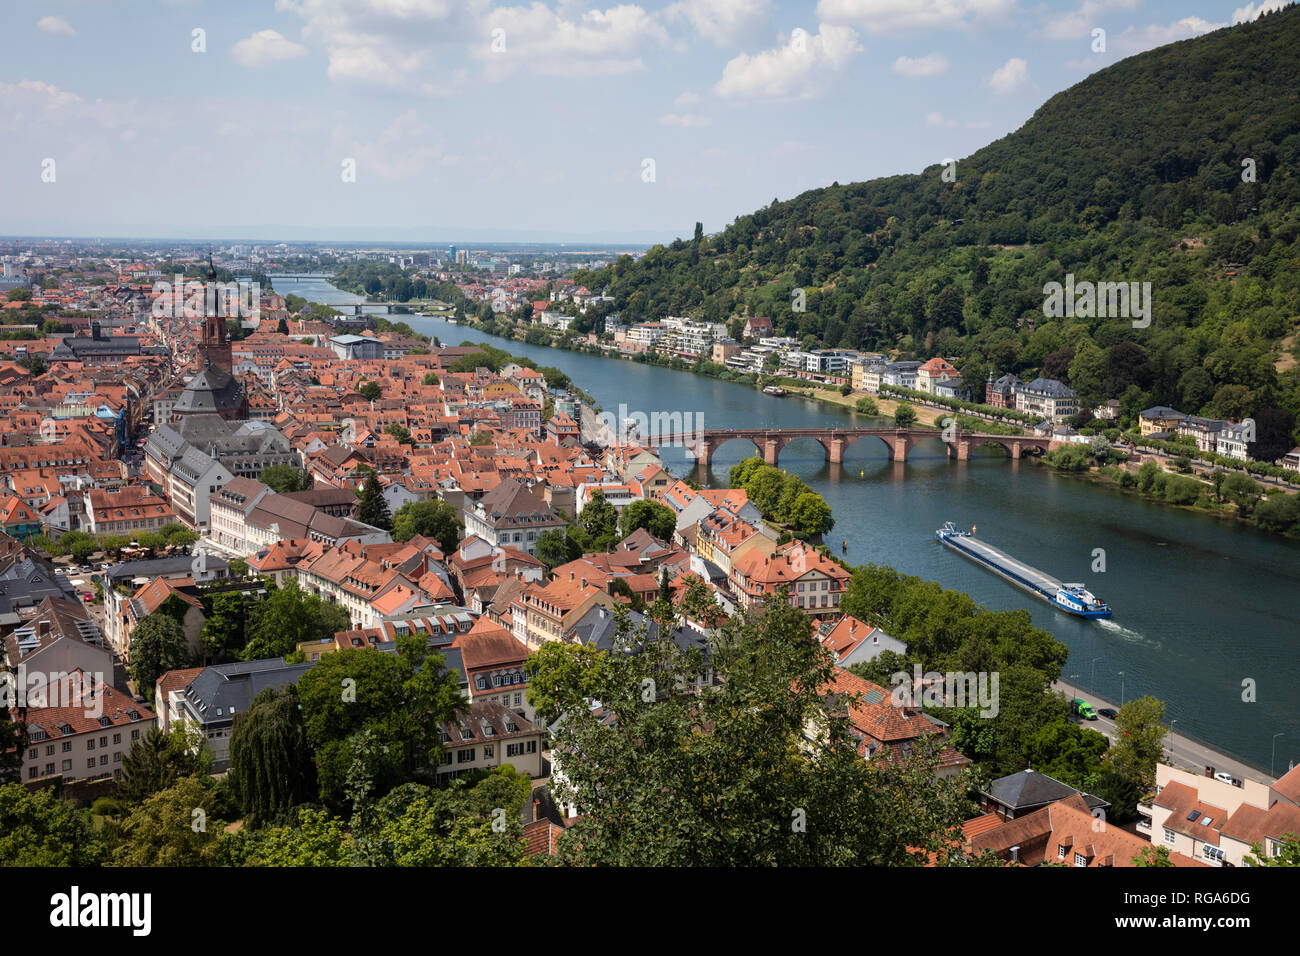 Deutschland, Baden-Württemberg, Heidelberg, Neckar, Blick auf die Stadt mit Charles-Theodore-Brücke Stockfoto